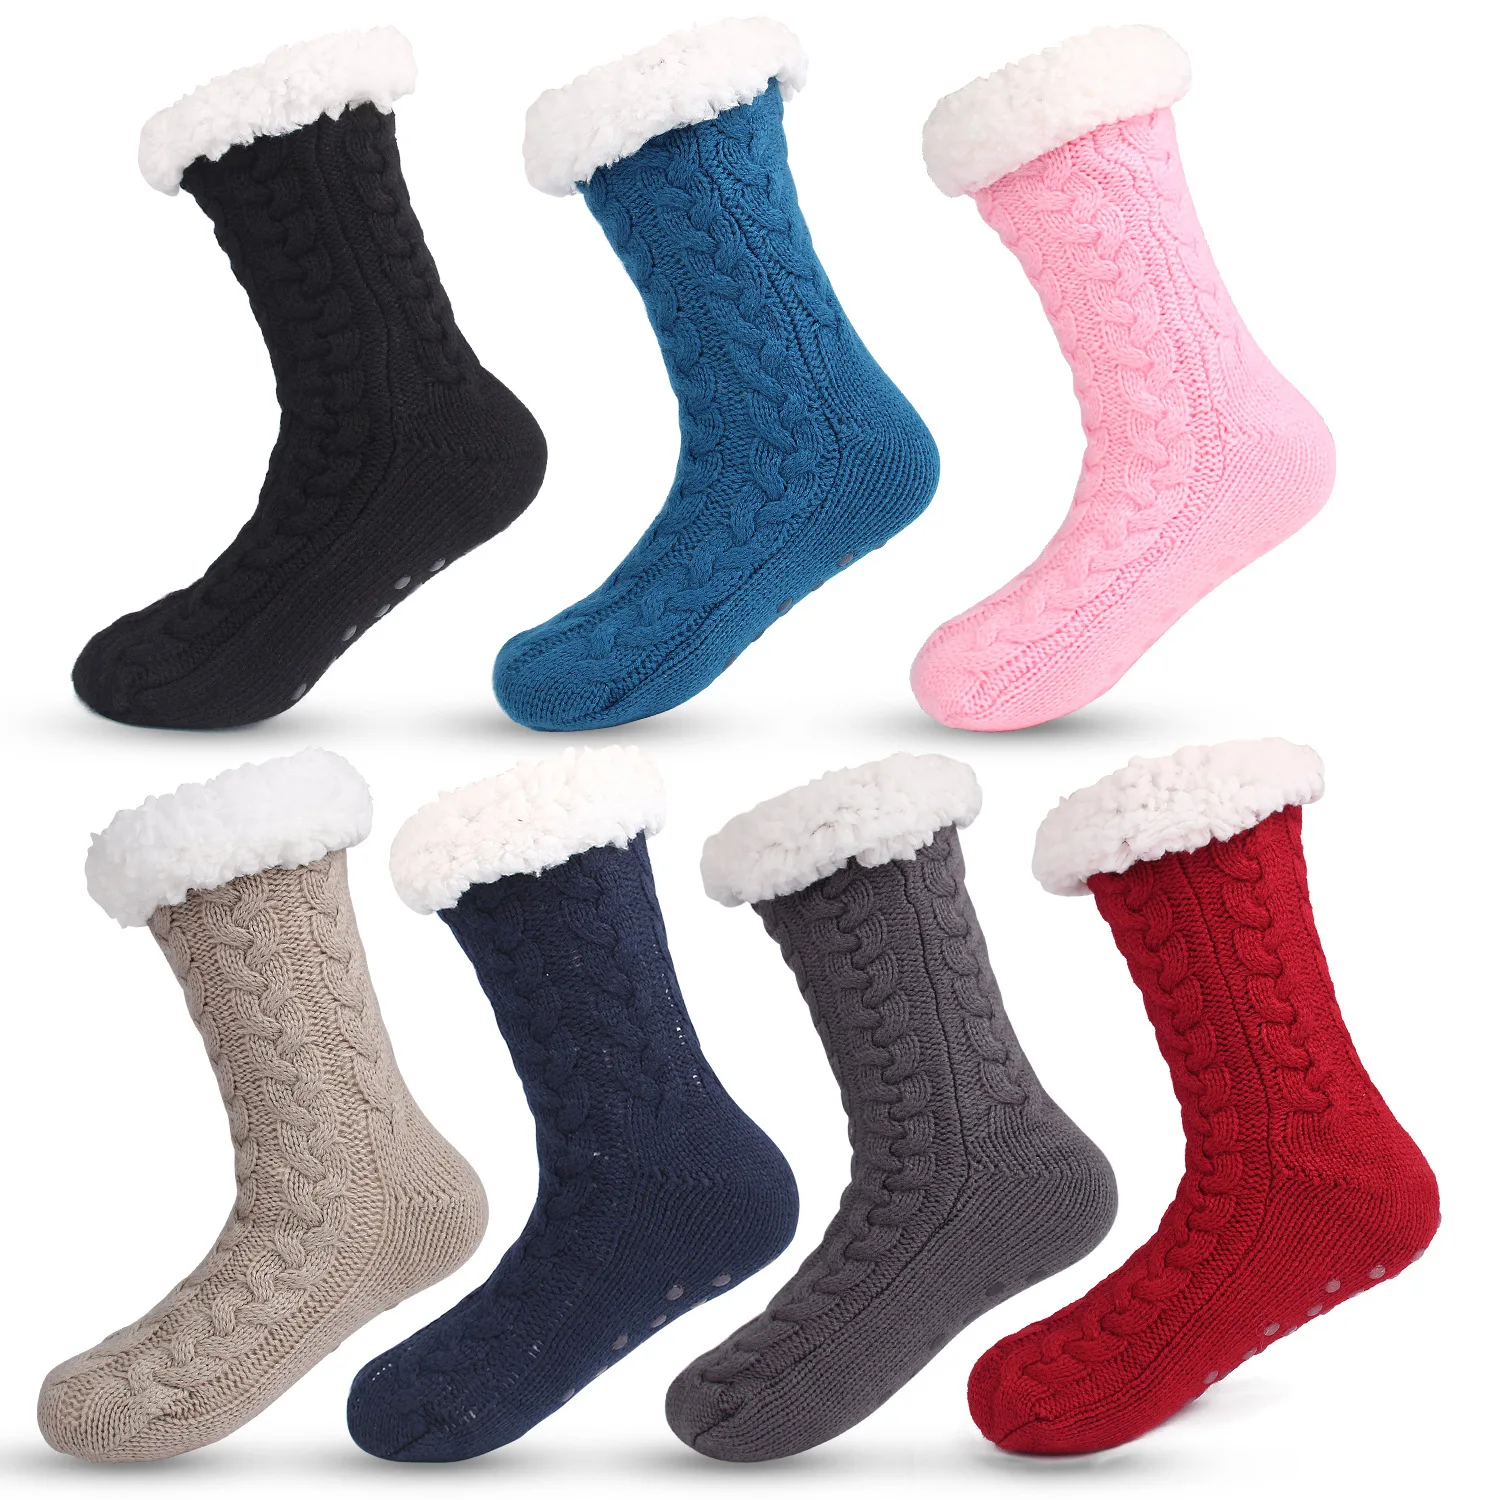 

Autumn Winter Anti-slip Thick Warm Velvet Floor Socks Women Snow Super Soft Fuzzy Slipper Socks Coral Fleece Home Floor Socks, Picture shown